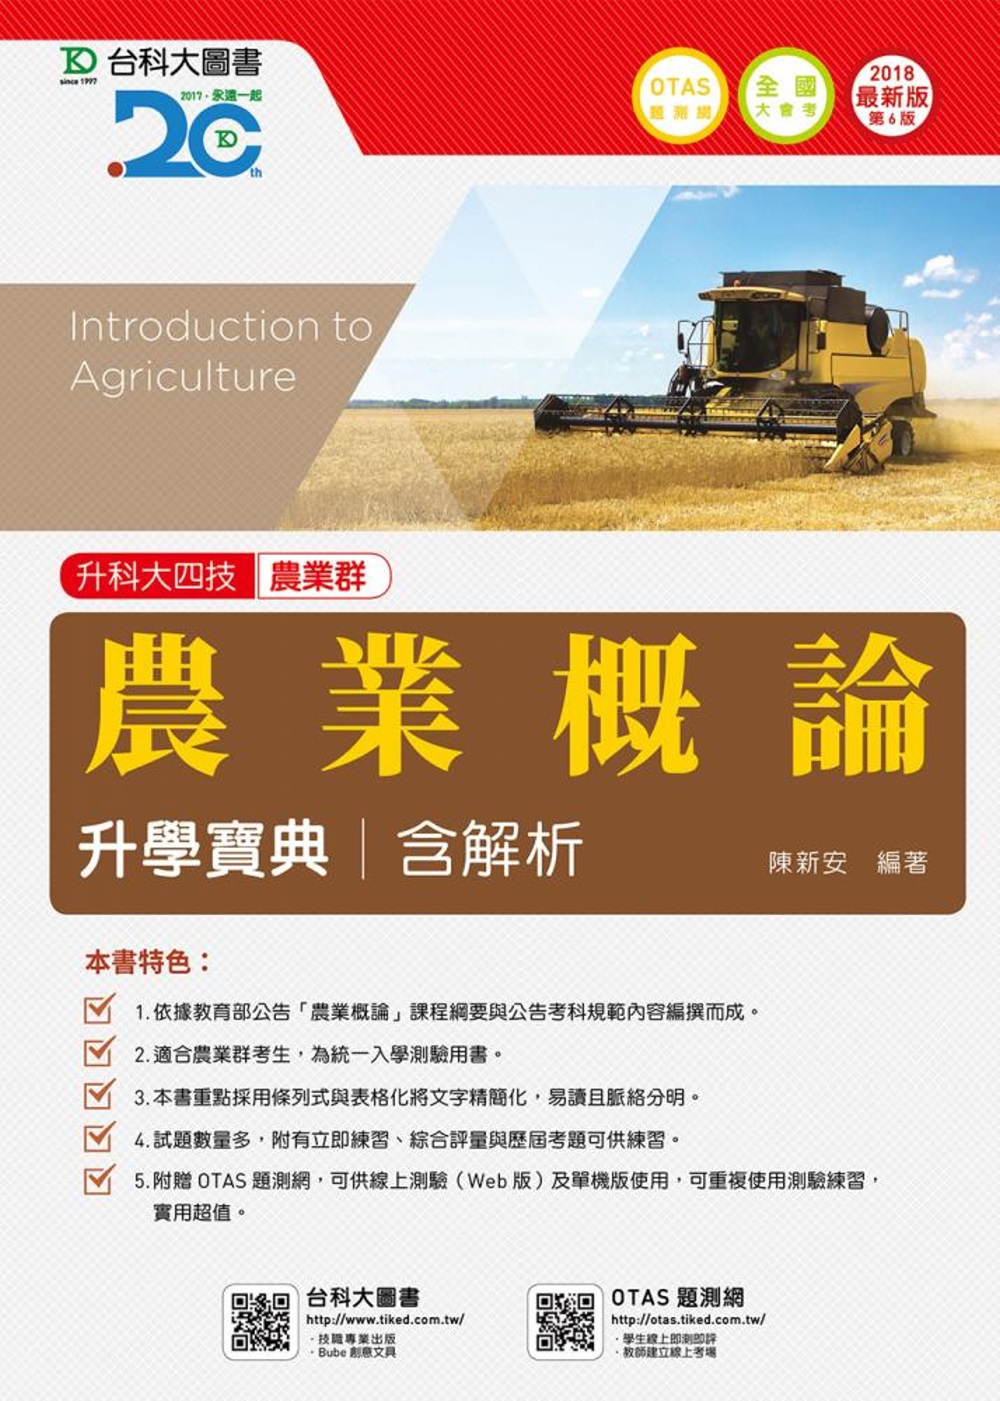 升科大四技農業群農業概論升學寶典含解析 - 2018年最新版(第六版) - 附贈OTAS題測系統